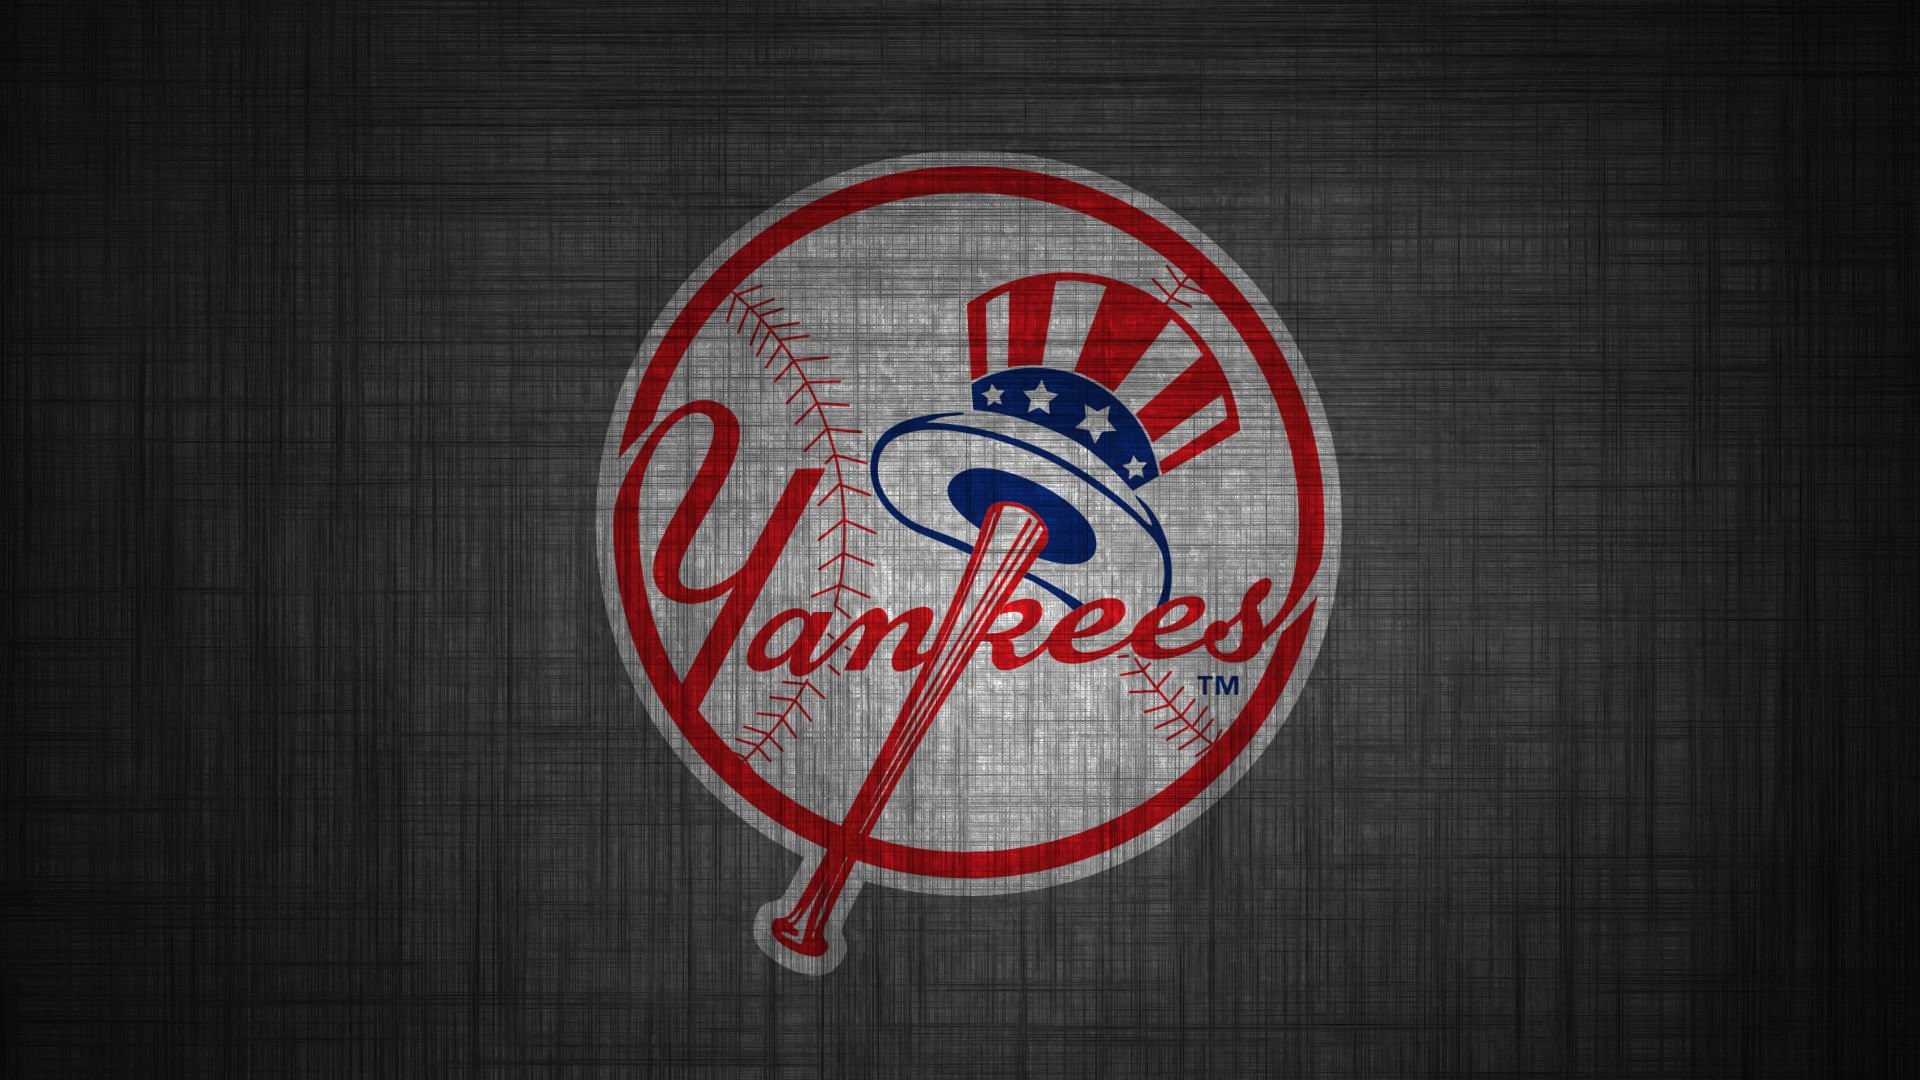 New York Yankees Logo Wallpaper ·① Wallpapertag